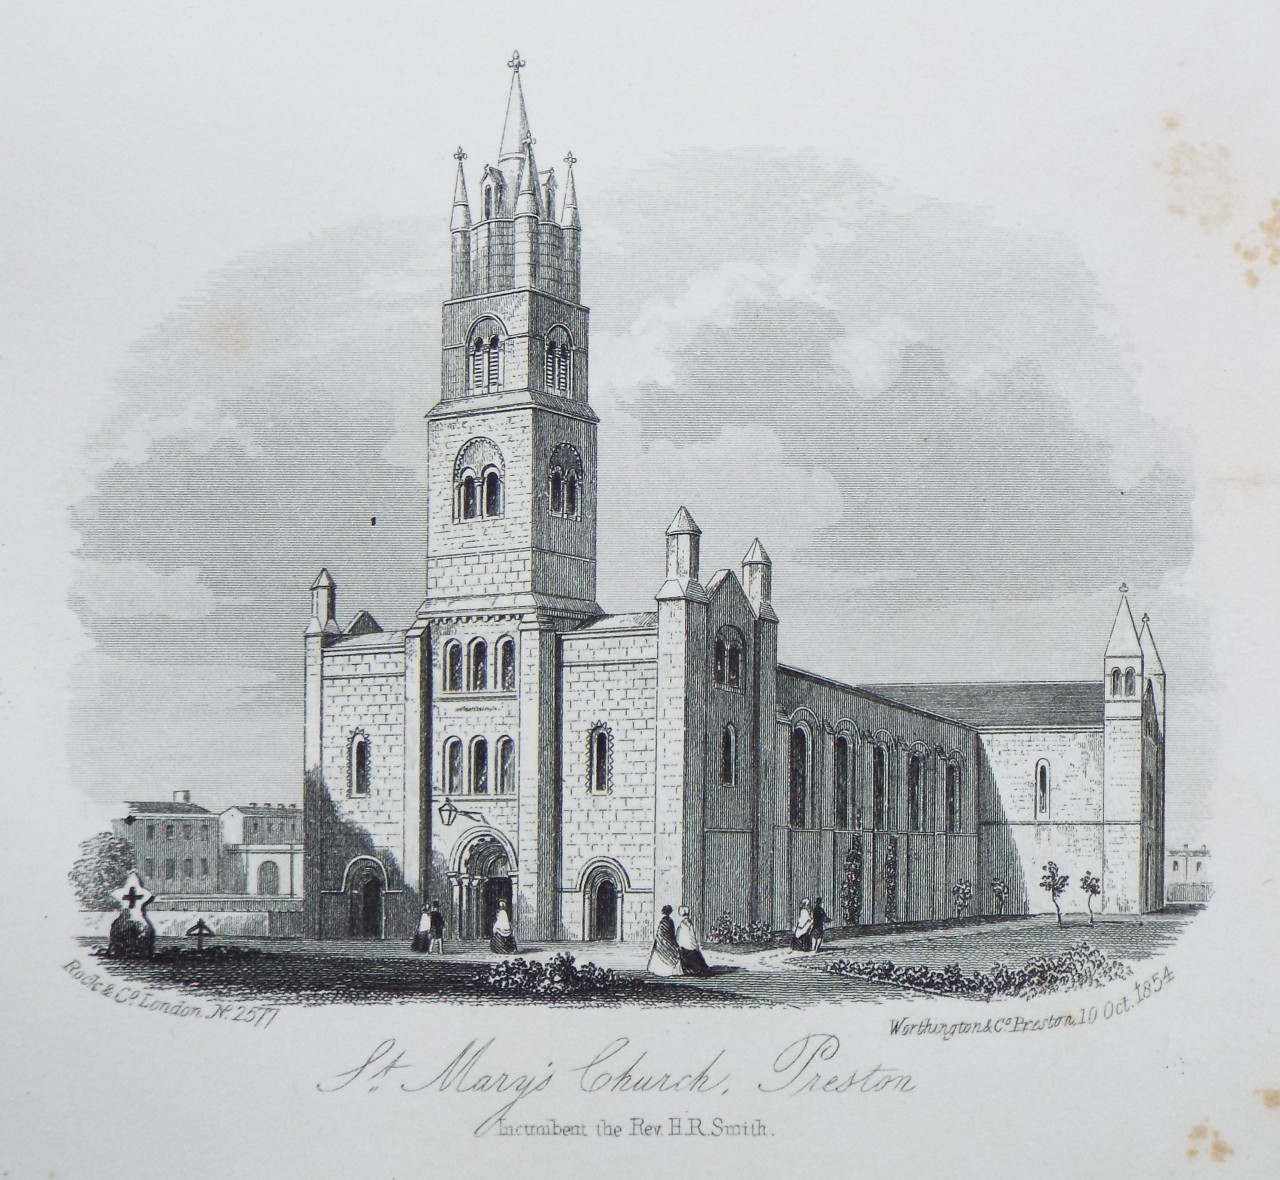 Steel Vignette - St. Mary's Church, Preston. Incumbent the Rev. H. R. Smith. - Rock